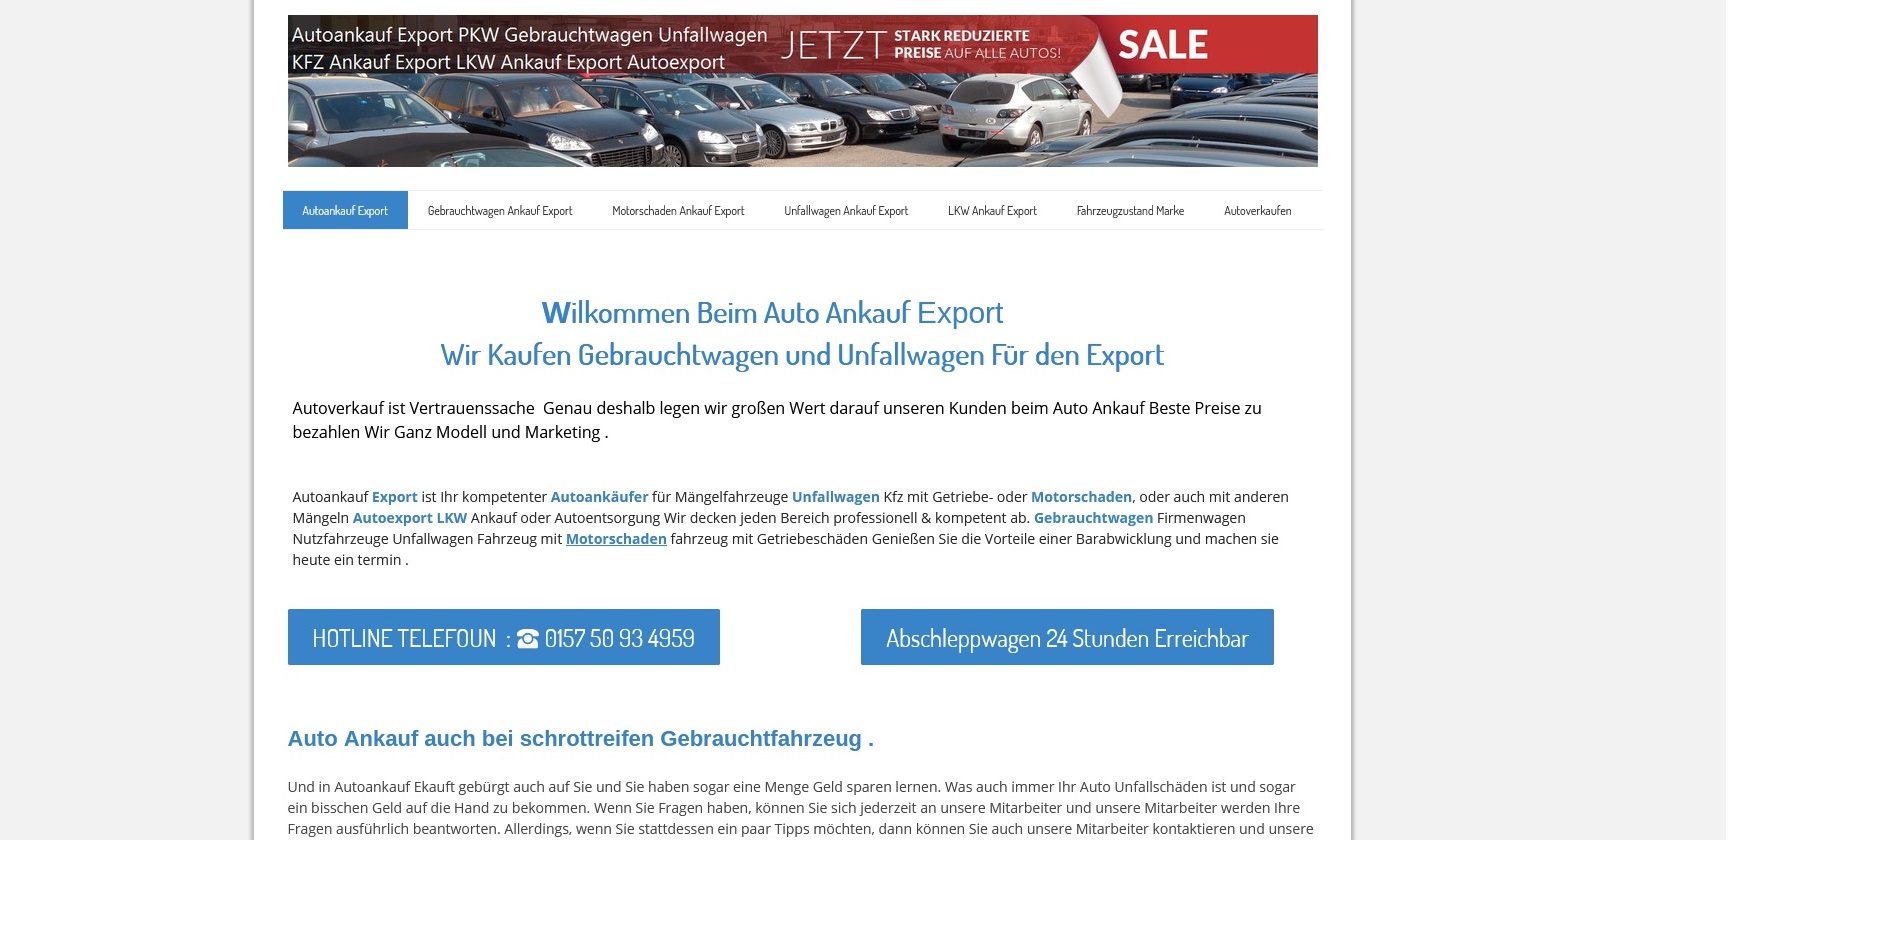 kfz ankauf export de autoankauf wuerzburg auch mit motorschaden - kfz-ankauf-export.de | Autoankauf Würzburg auch mit Motorschaden